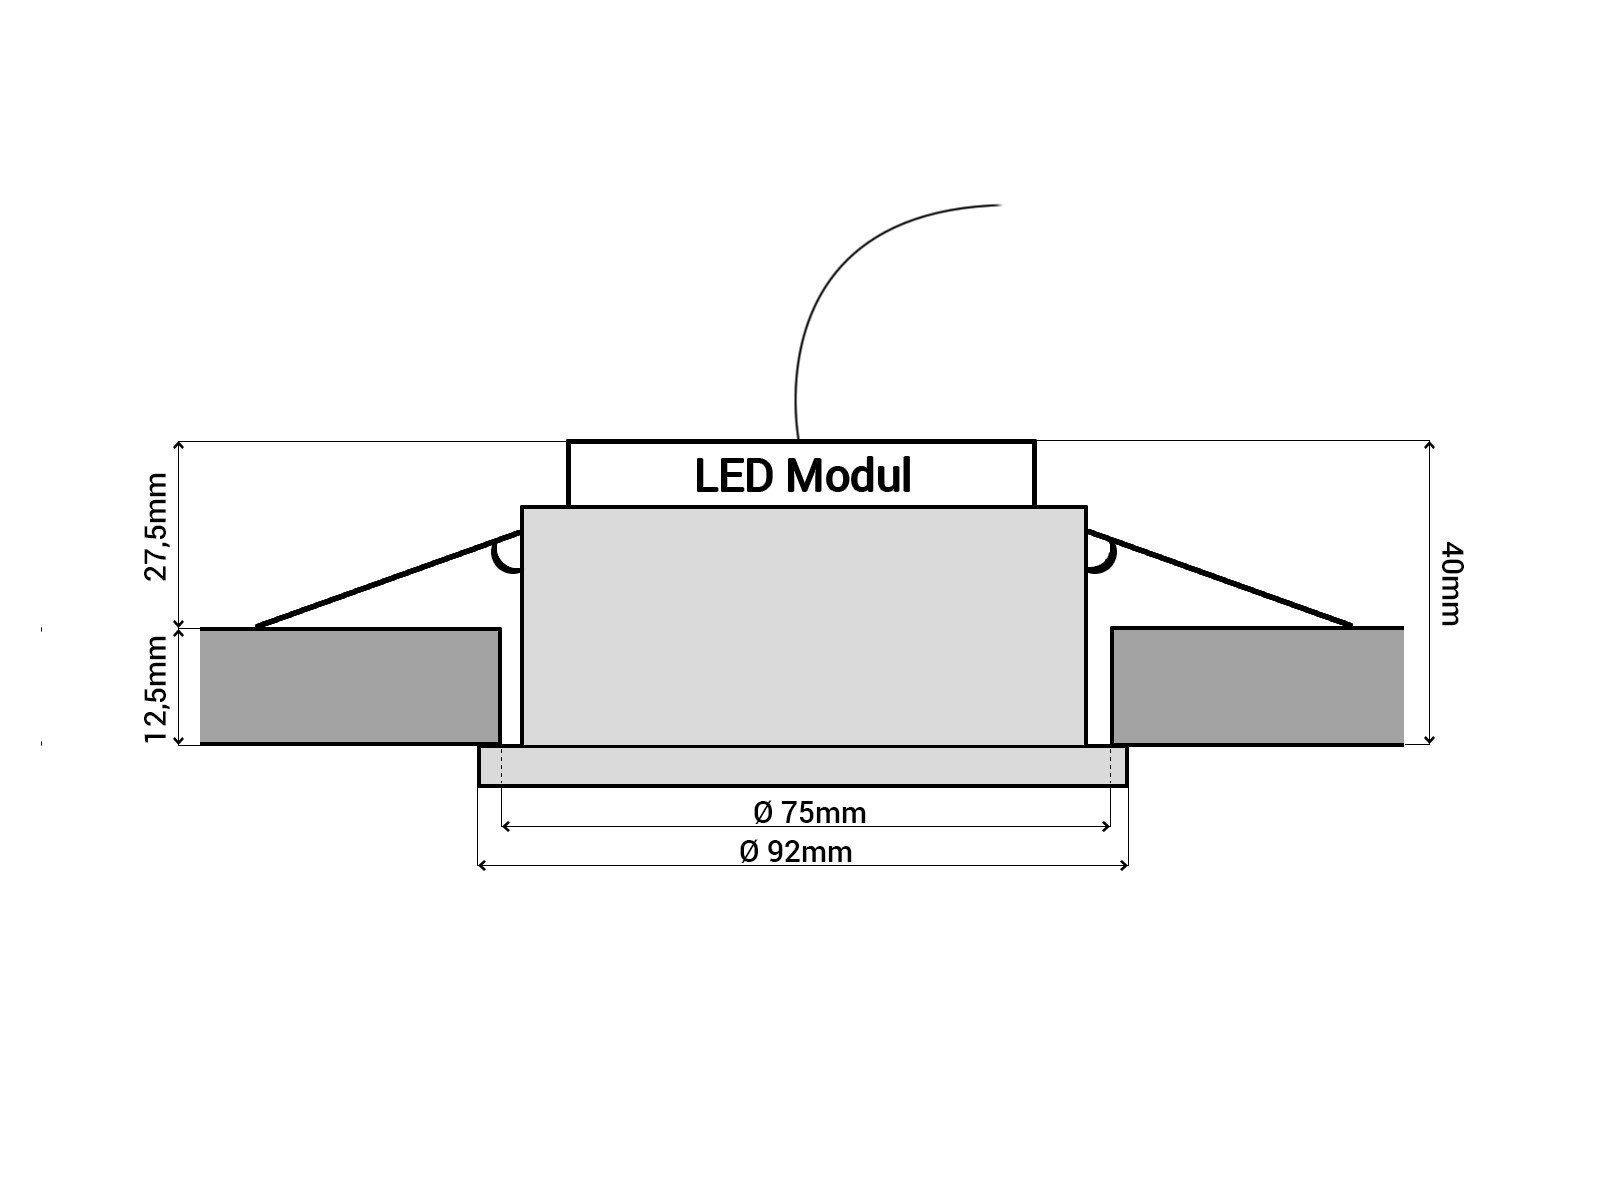 schwenkbar schwarz RF-2 mit SSC-LUXon flach Alu Warmweiß rund Einbaustrahler LED-Modul, LED-Einbauspot LED